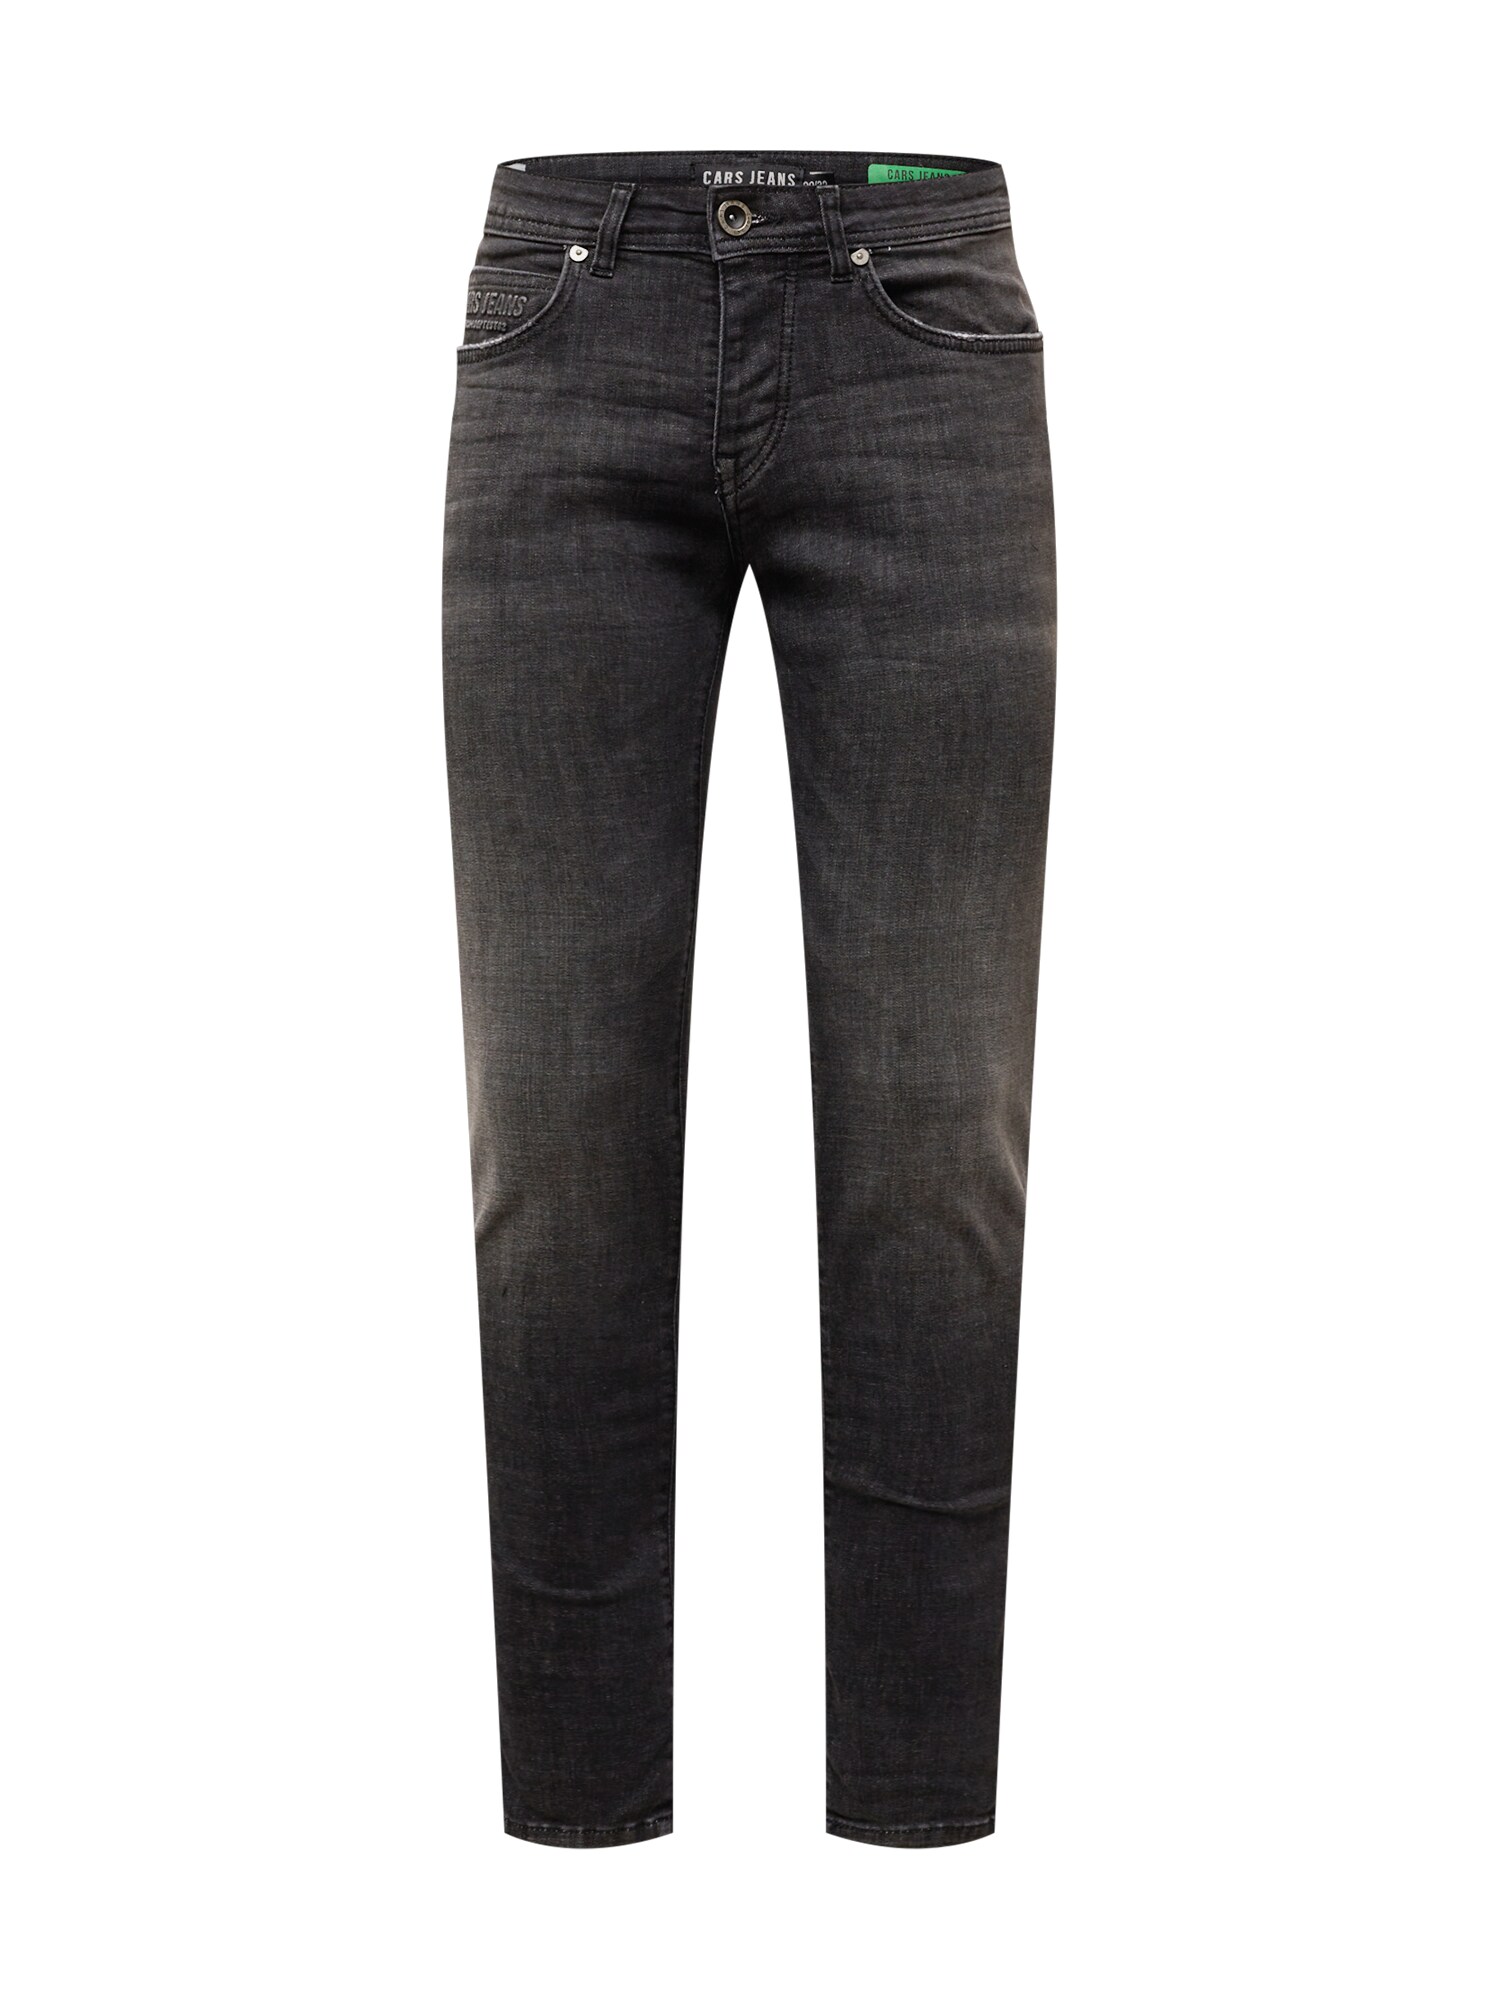 Cars Jeans Džinsai 'MARSHALL' juodo džinso spalva